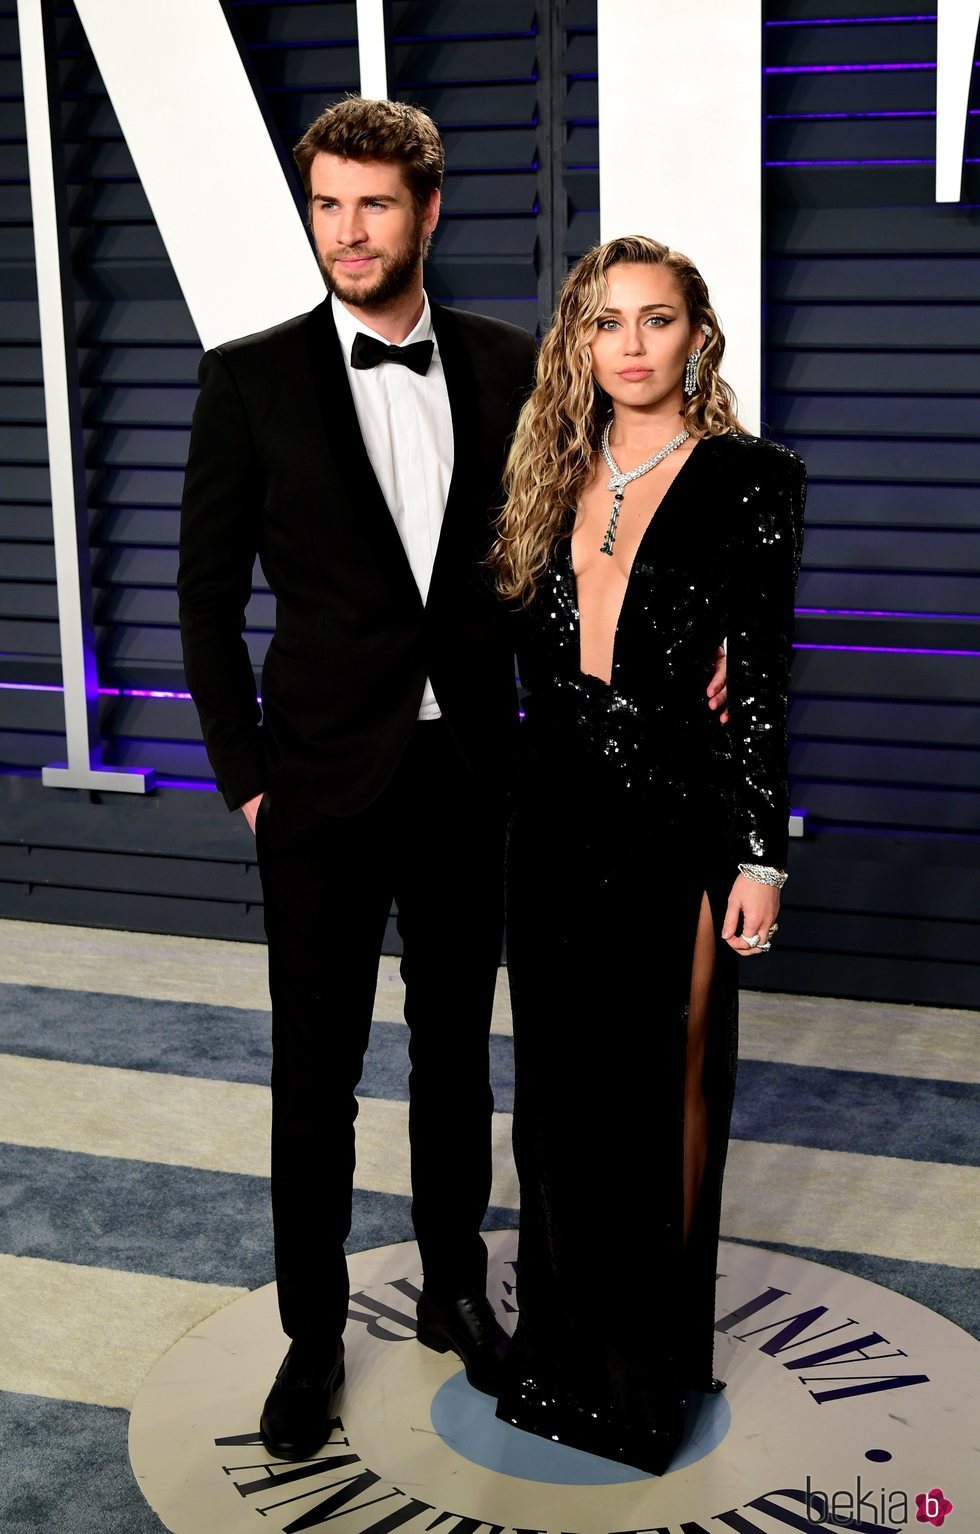 Miley Cyrus y Liam Hemsworth en la fiesta Vanity Fair tras los Premios Oscar 2019